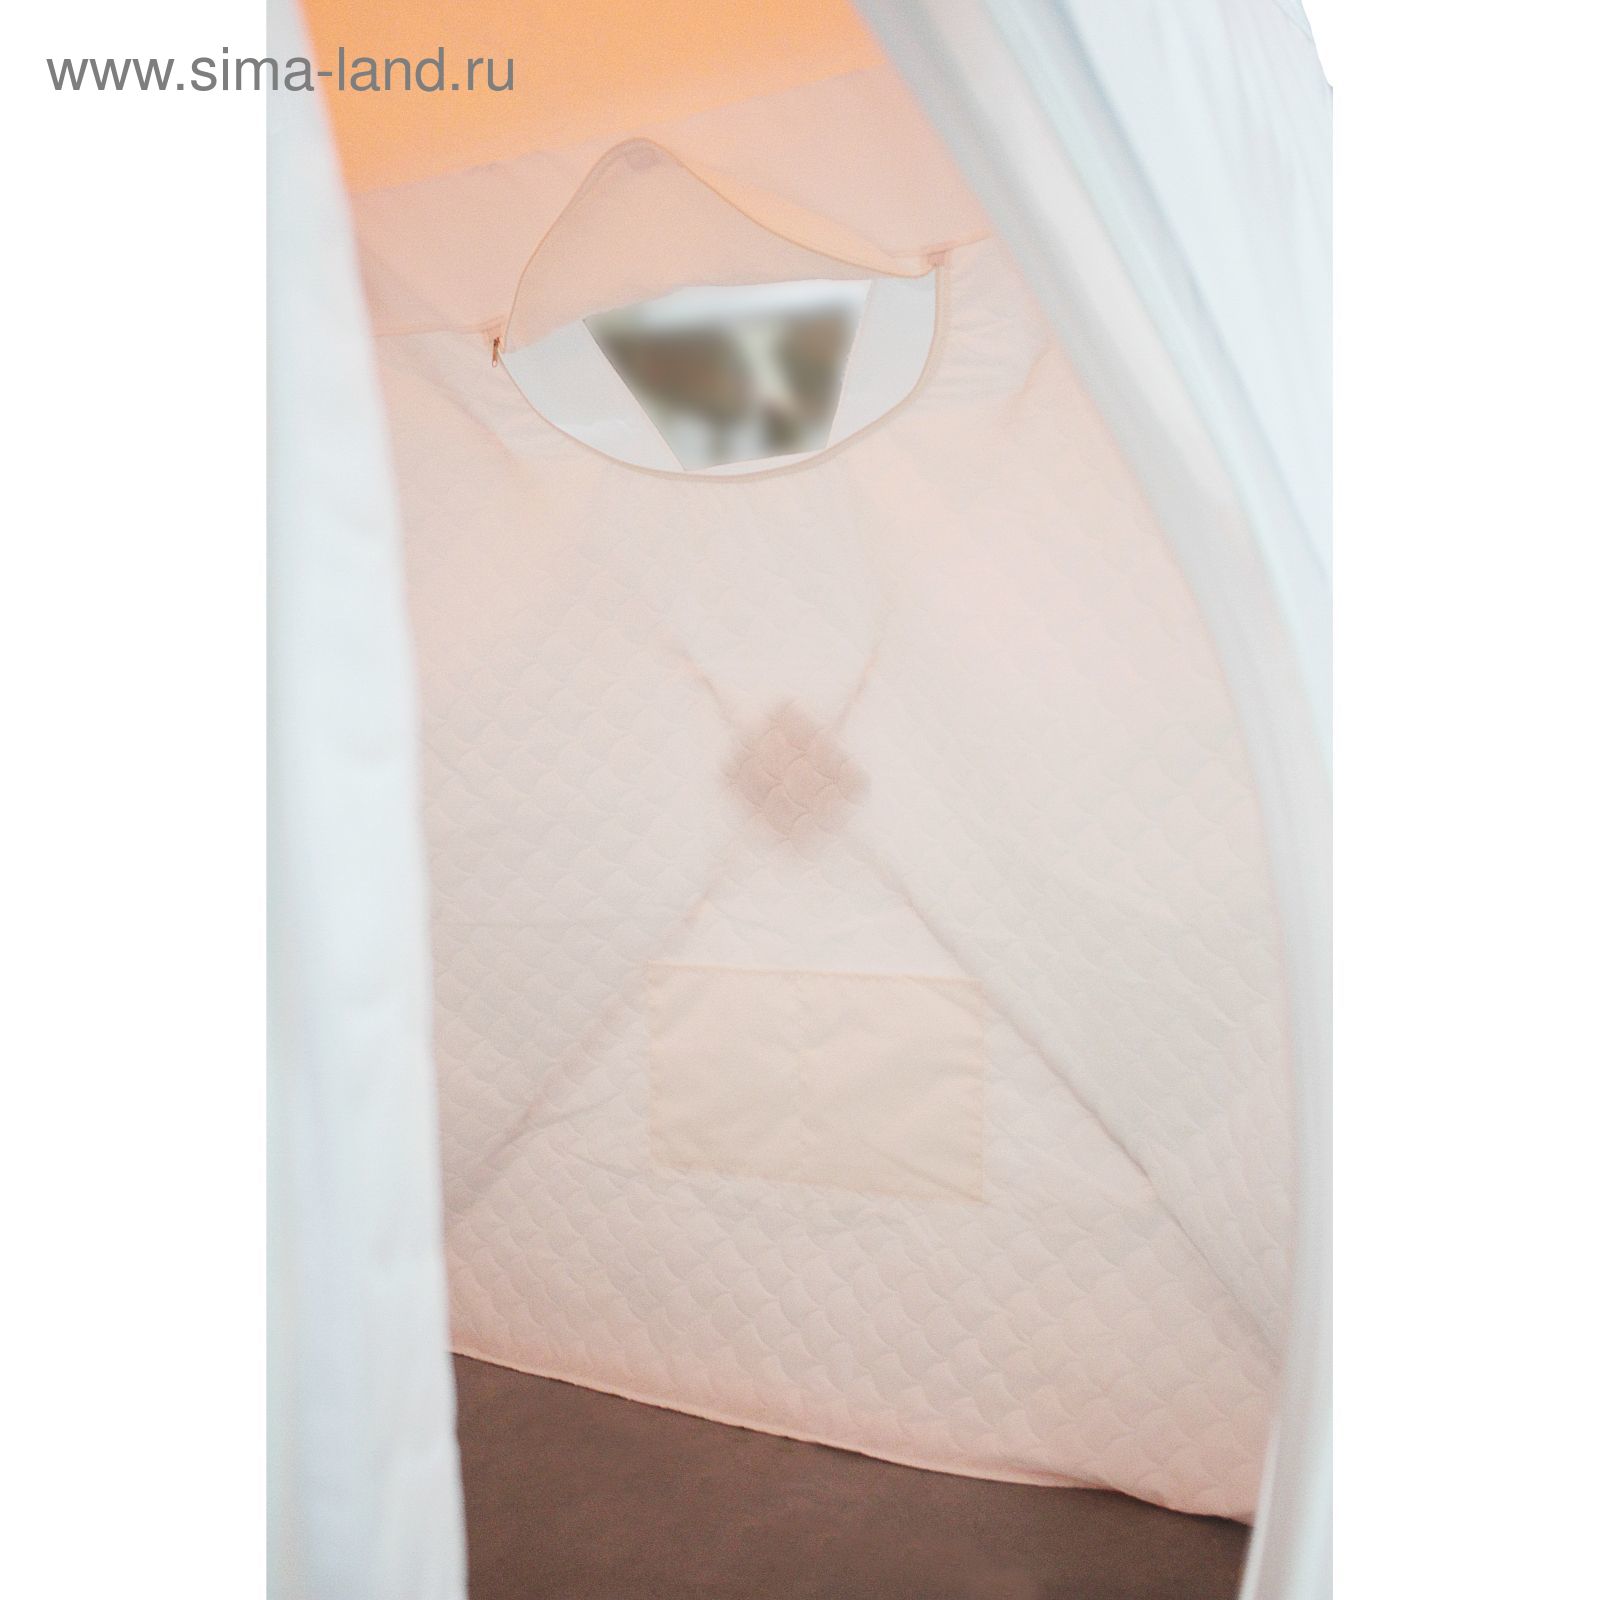 Палатка "Призма Стандарт" 150, 3-слойная, цвет бело-оранжевый